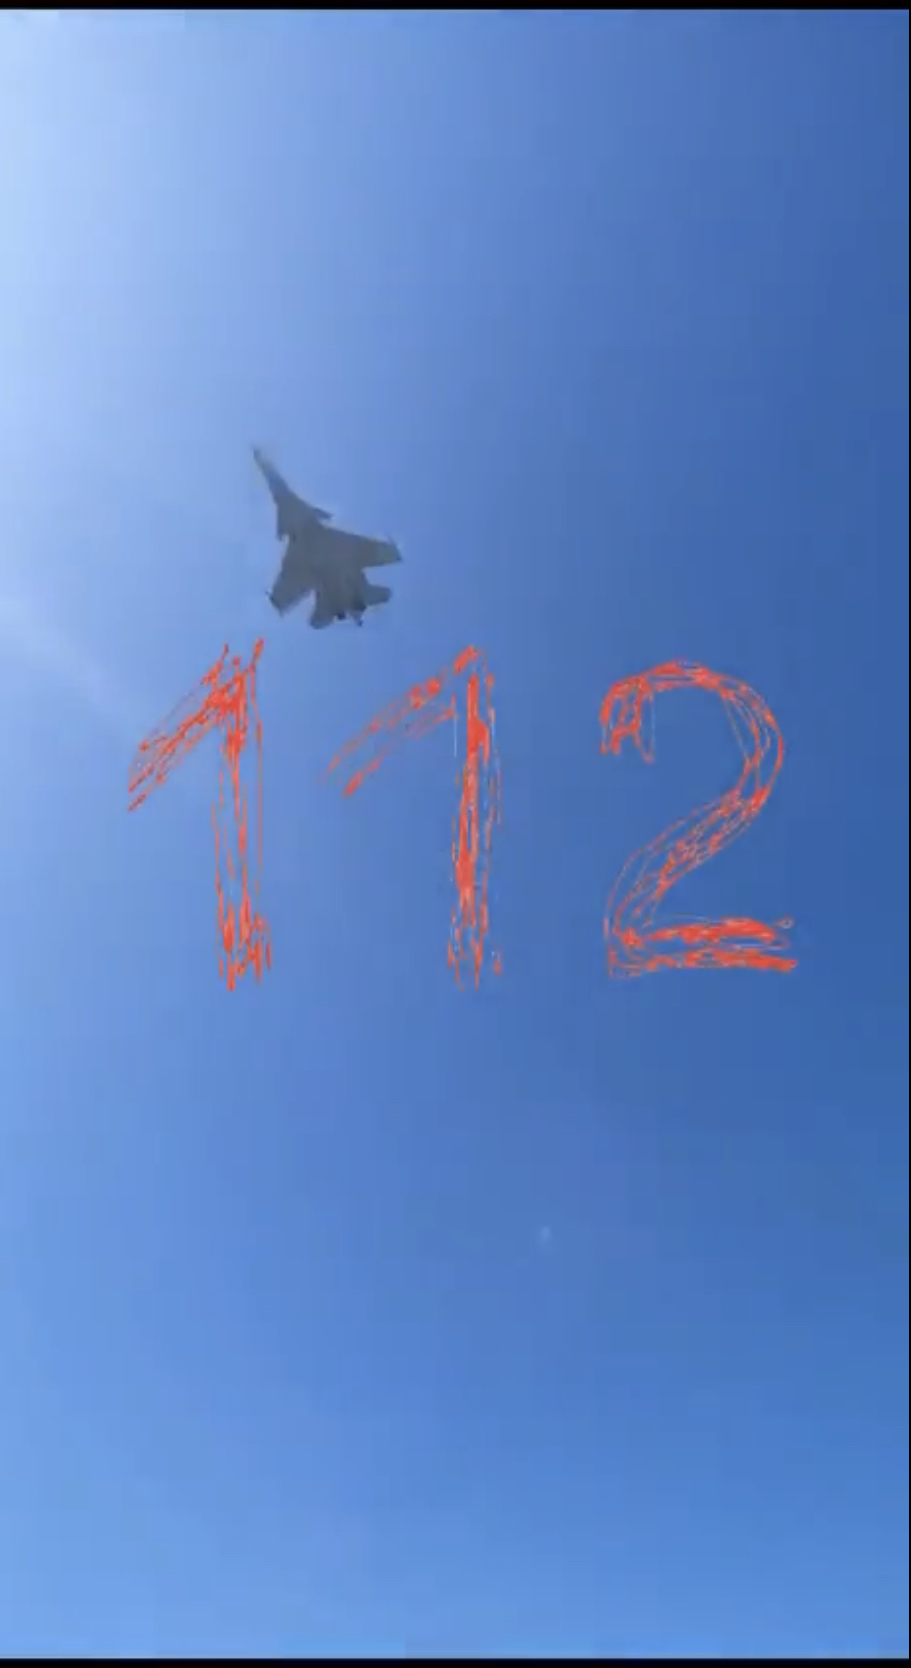 網傳影片顯示俄軍蘇-30戰機出事時在天空中亂竄。 censor.net